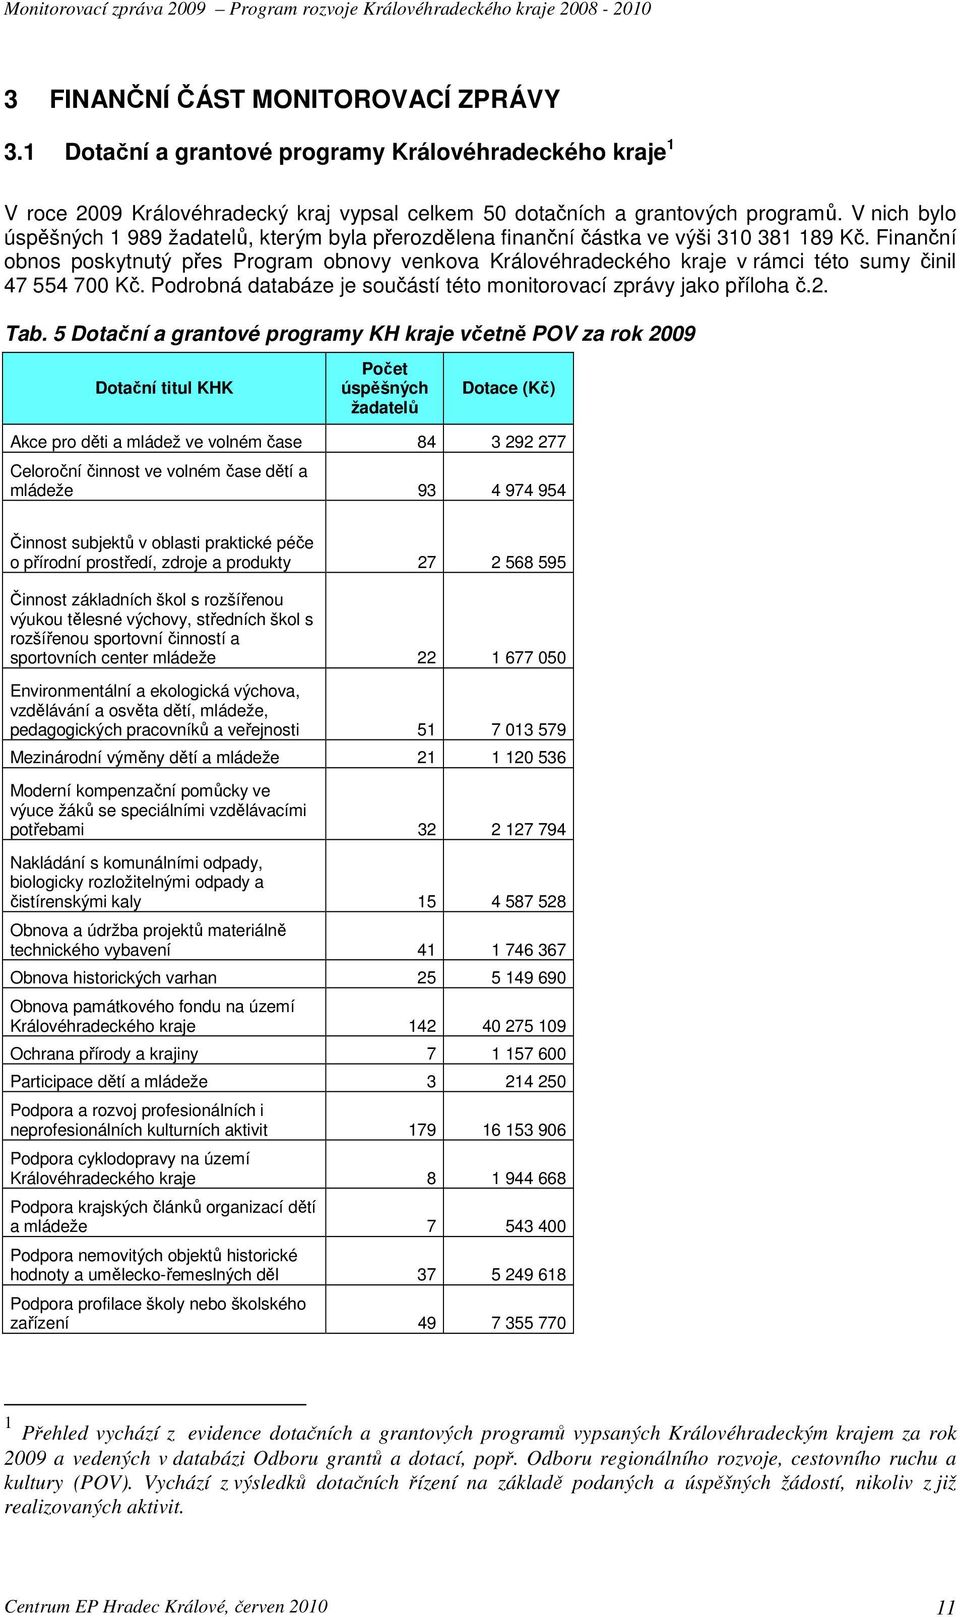 Finanční obnos poskytnutý přes Program obnovy venkova Královéhradeckého kraje v rámci této sumy činil 47 554 700 Kč. Podrobná databáze je součástí této monitorovací zprávy jako příloha č.2. Tab.